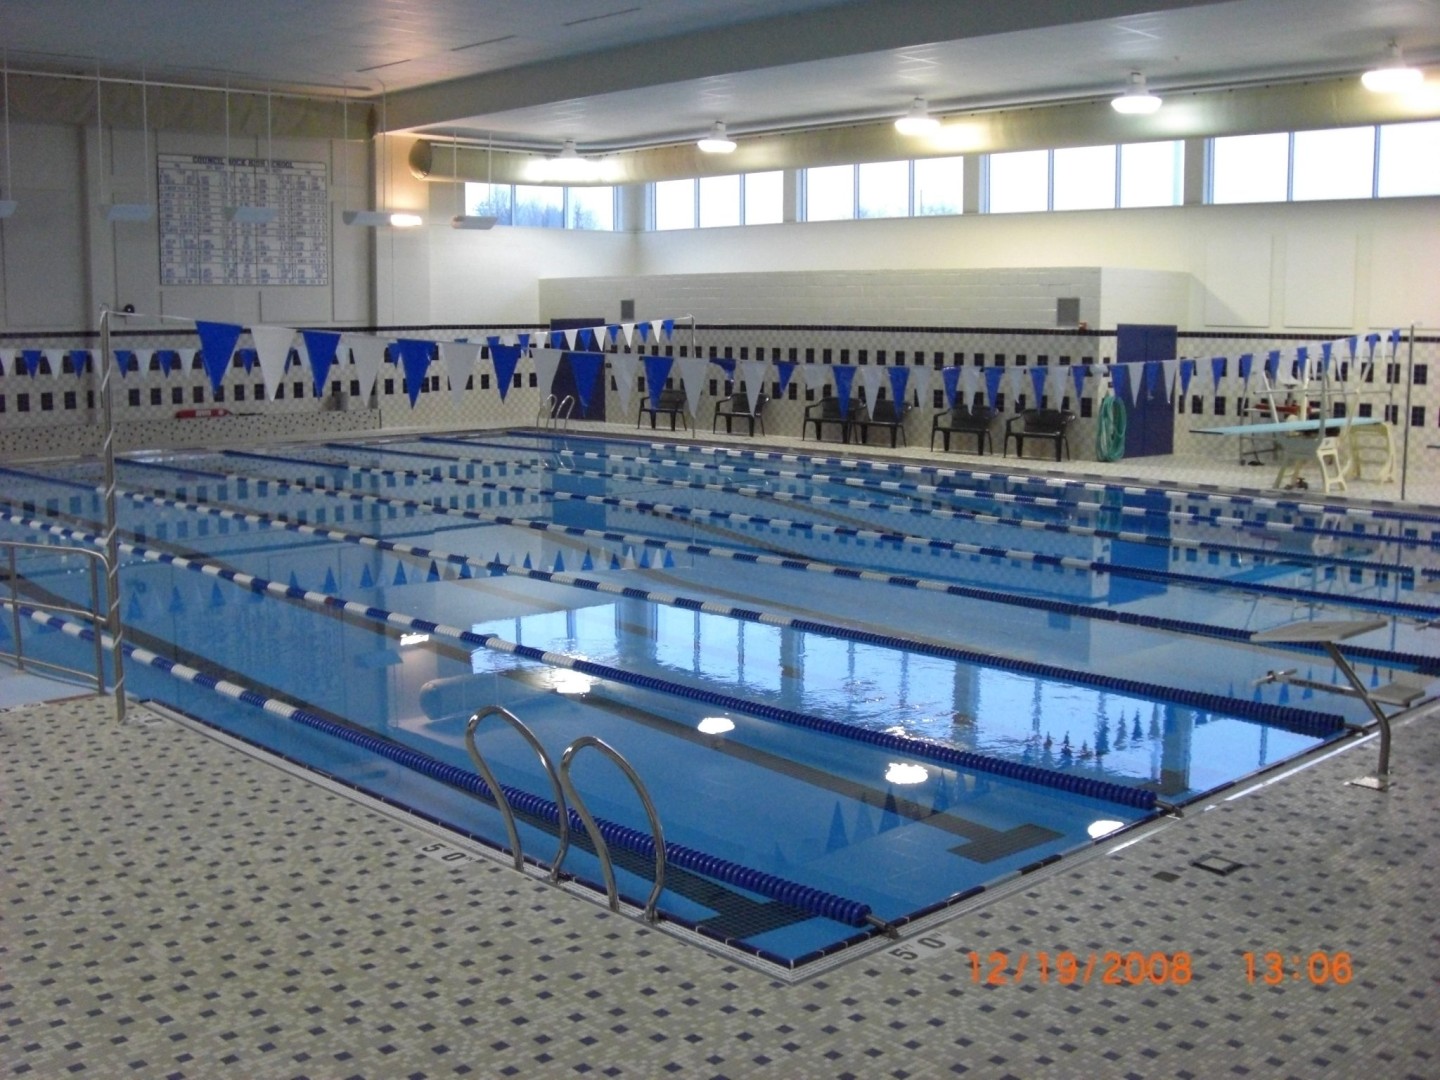 CRHS Pool 1